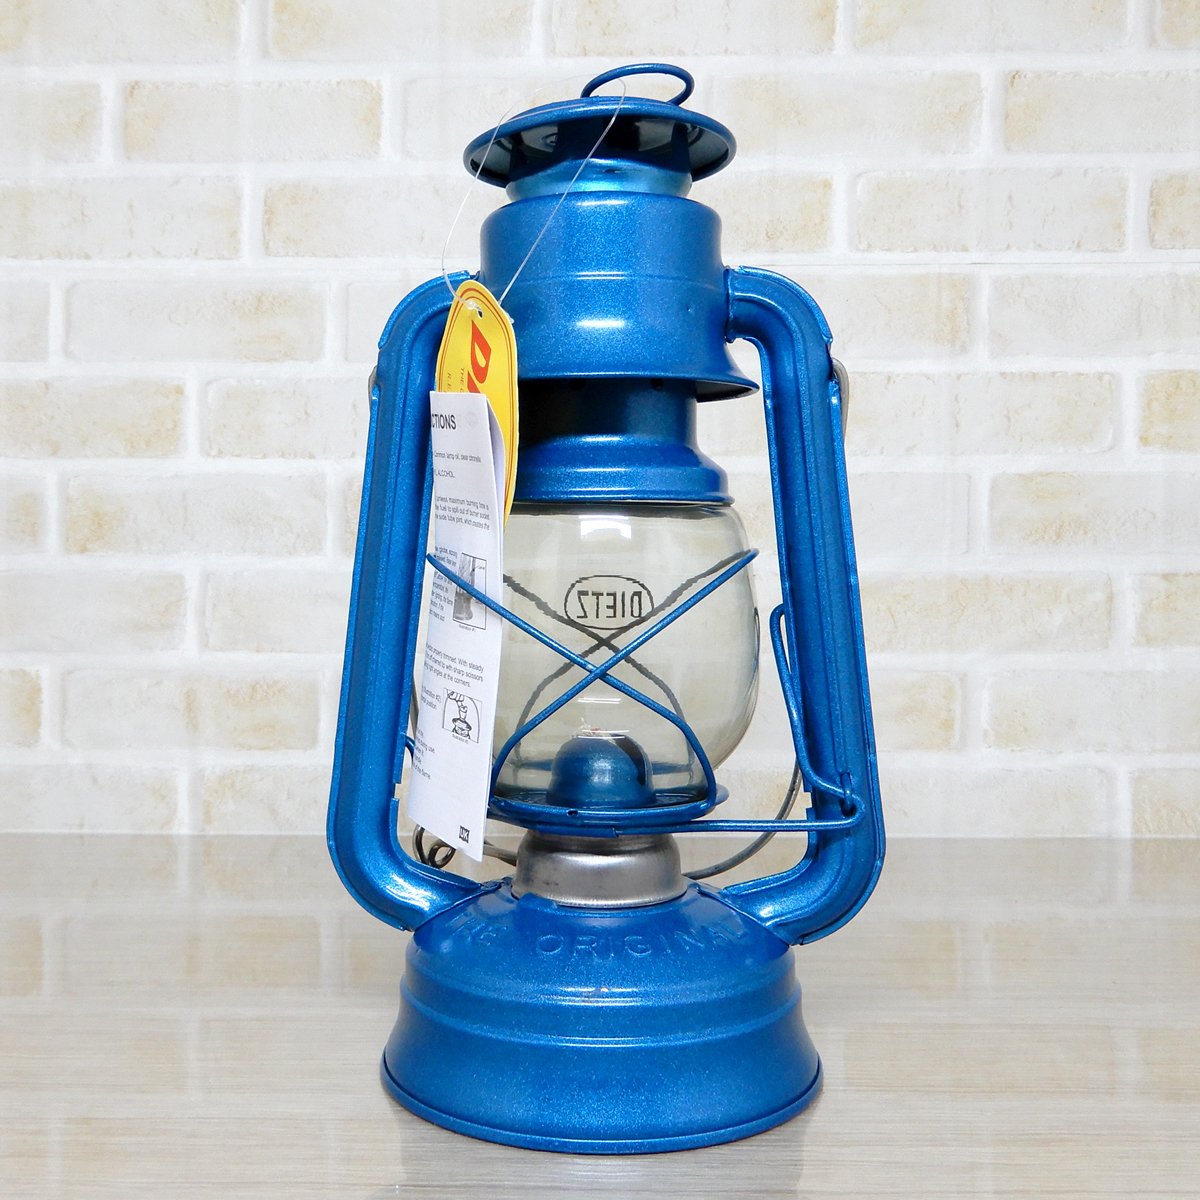 バーナー付【送料無料】新品 Dietz #76 Original Oil Lantern - Blue 【日本未発売】 ◇デイツ ブルー ハリケーンランタン 青 新品未使用